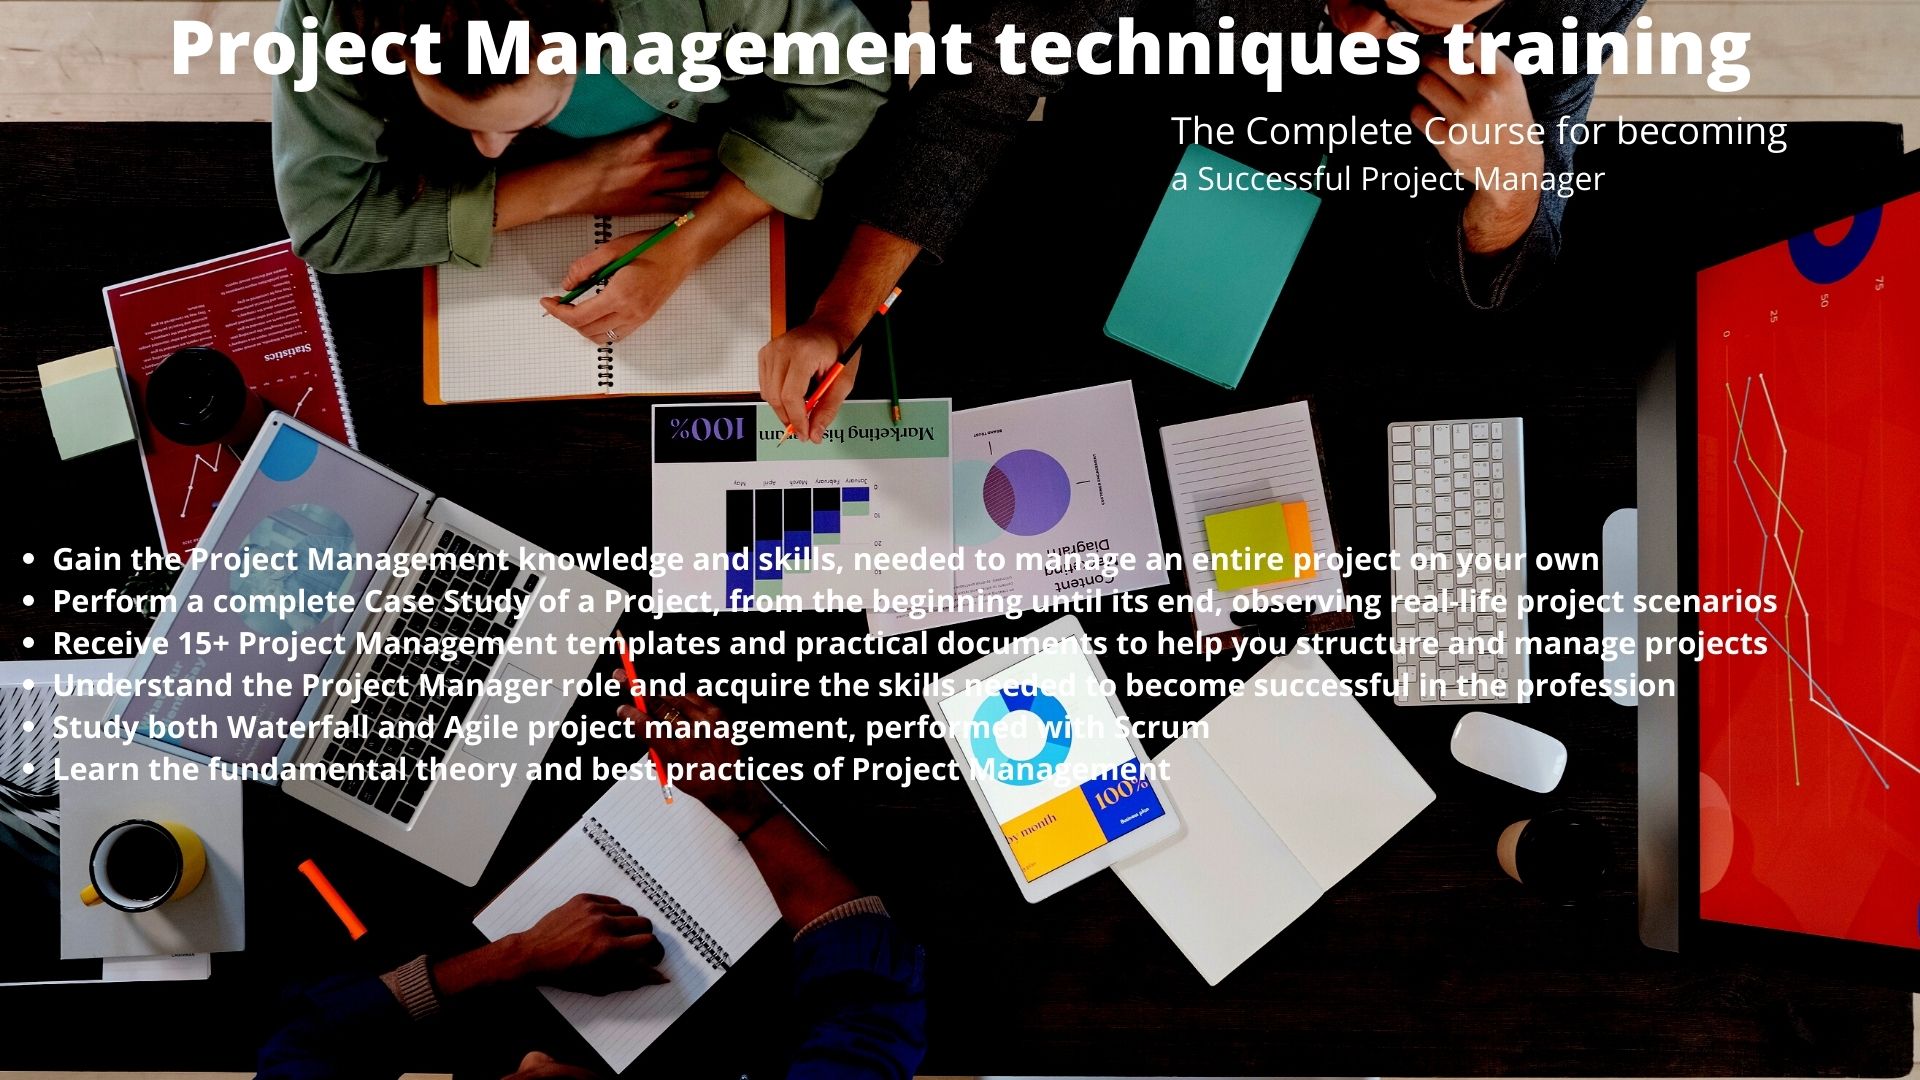 Project Management techniques training